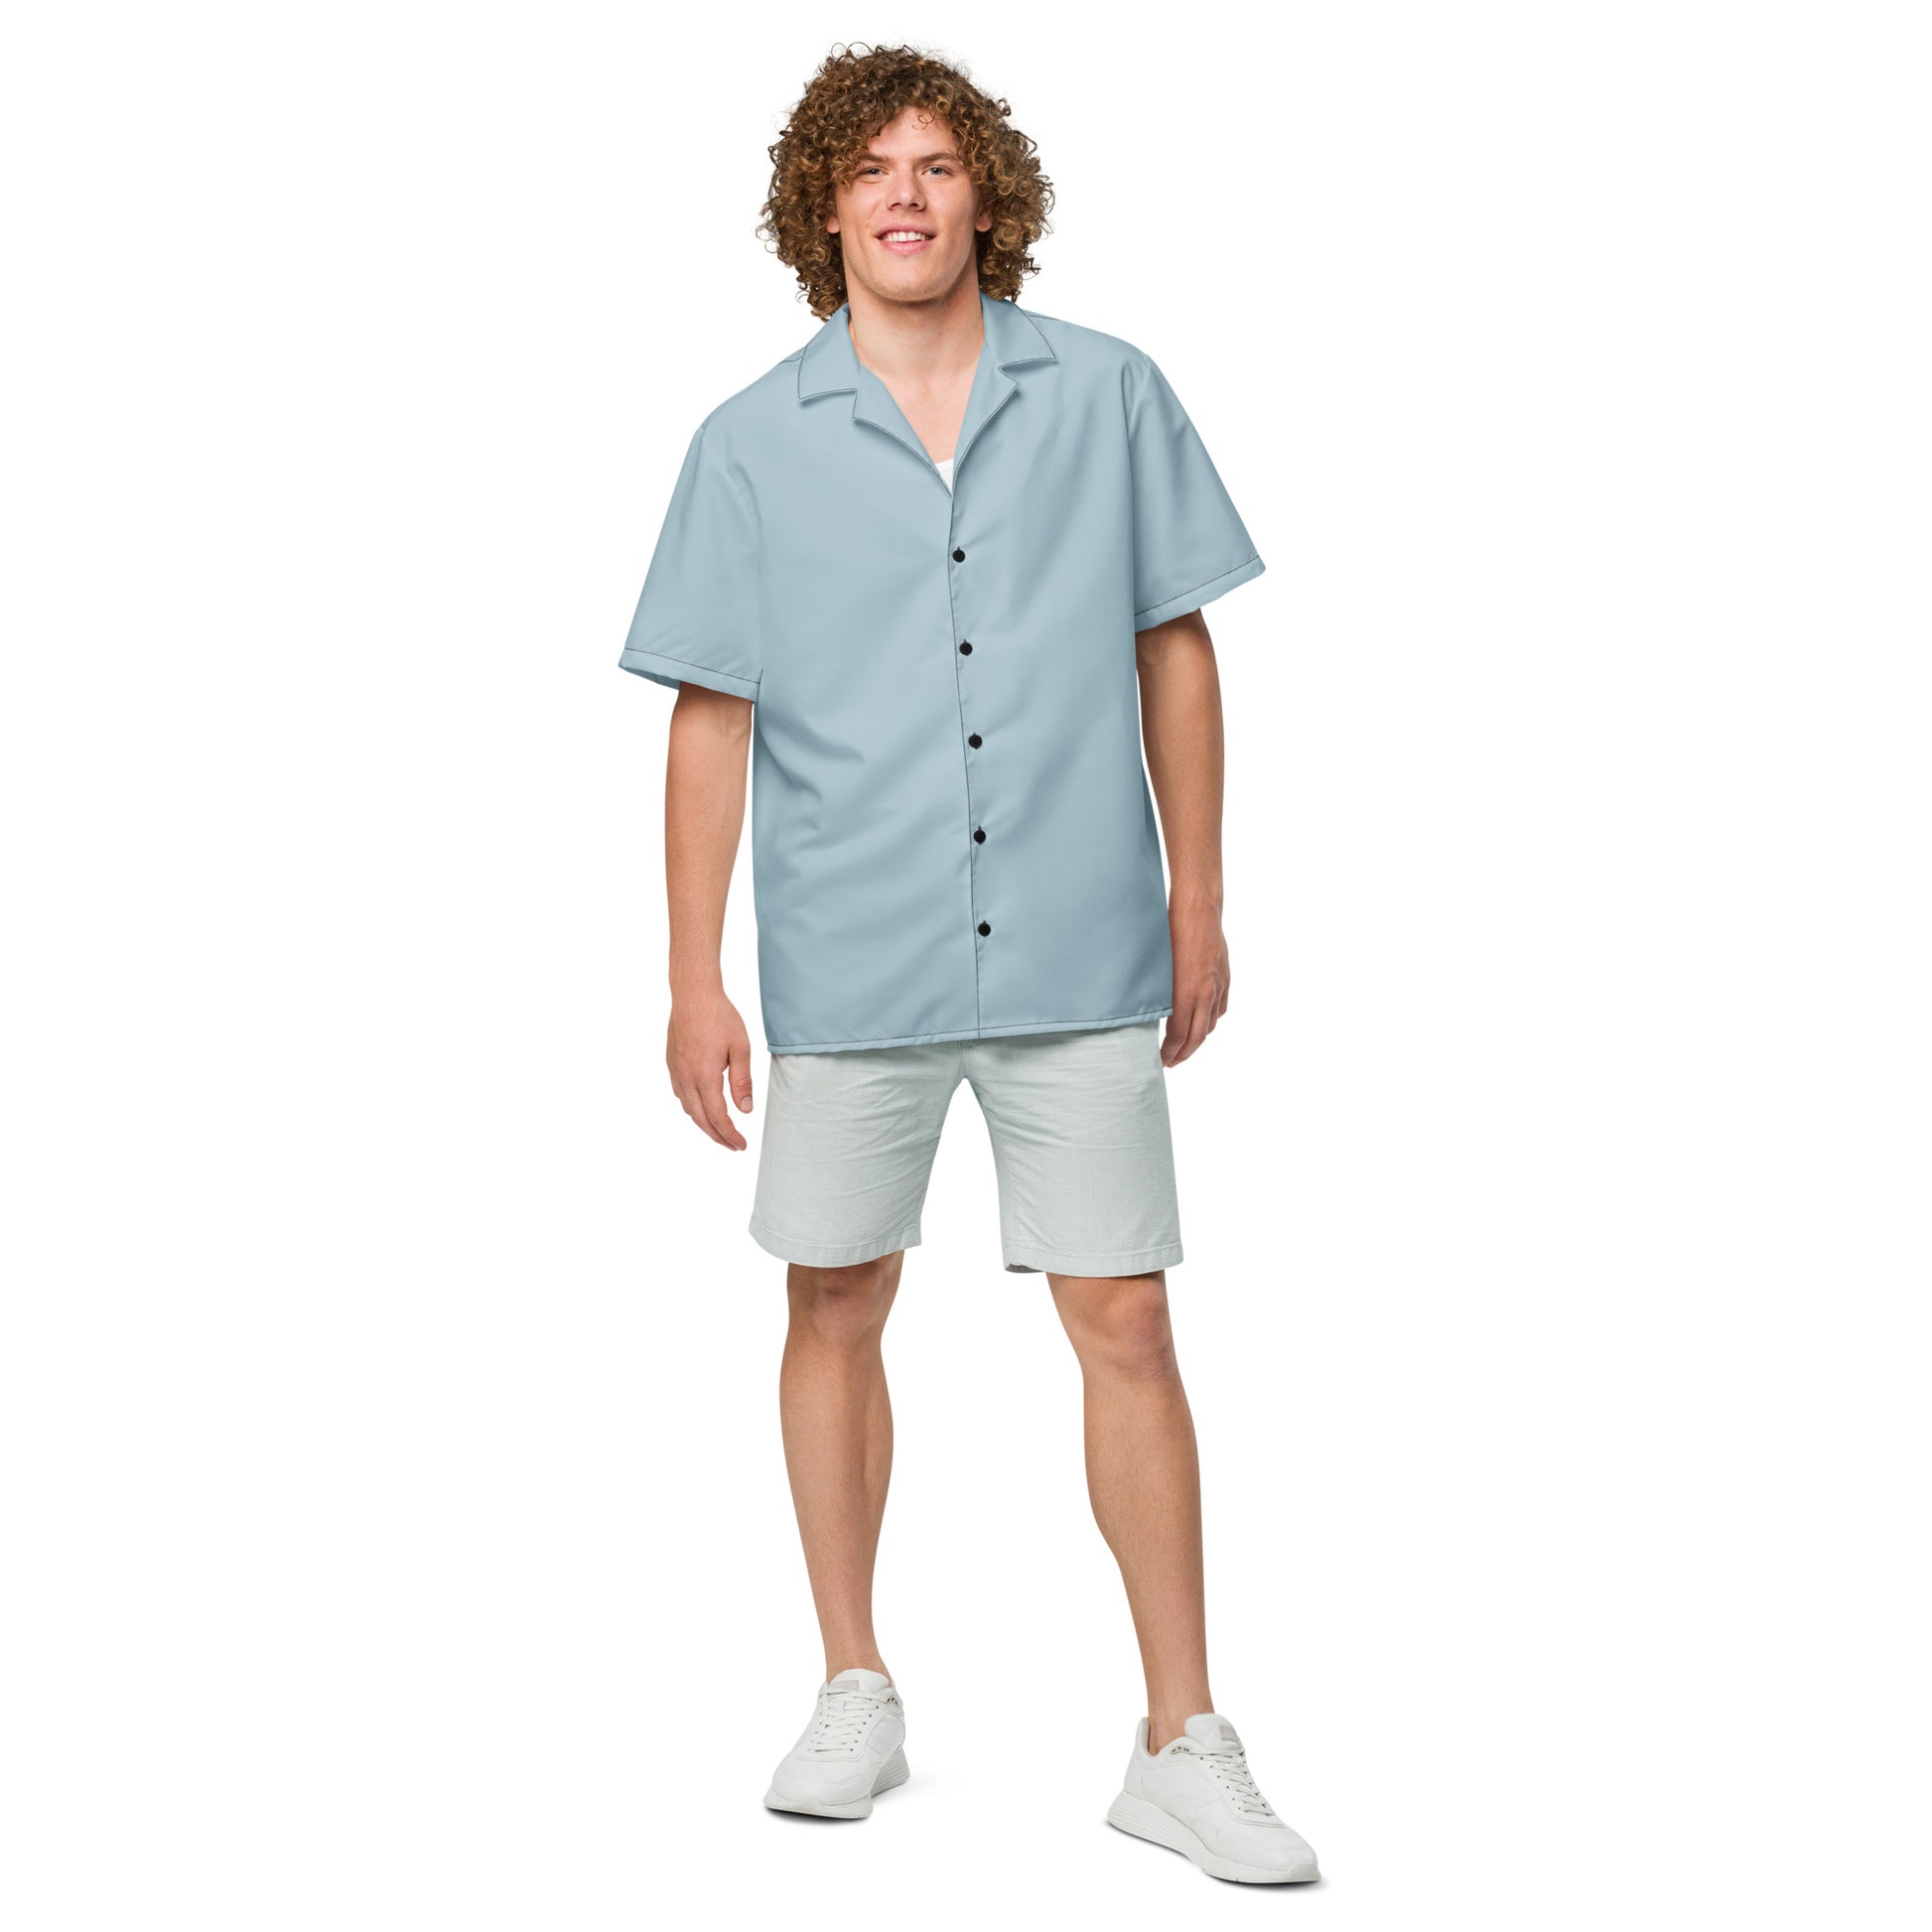 Shark Skin Blue button shirt - Tropical Seas Clothing 